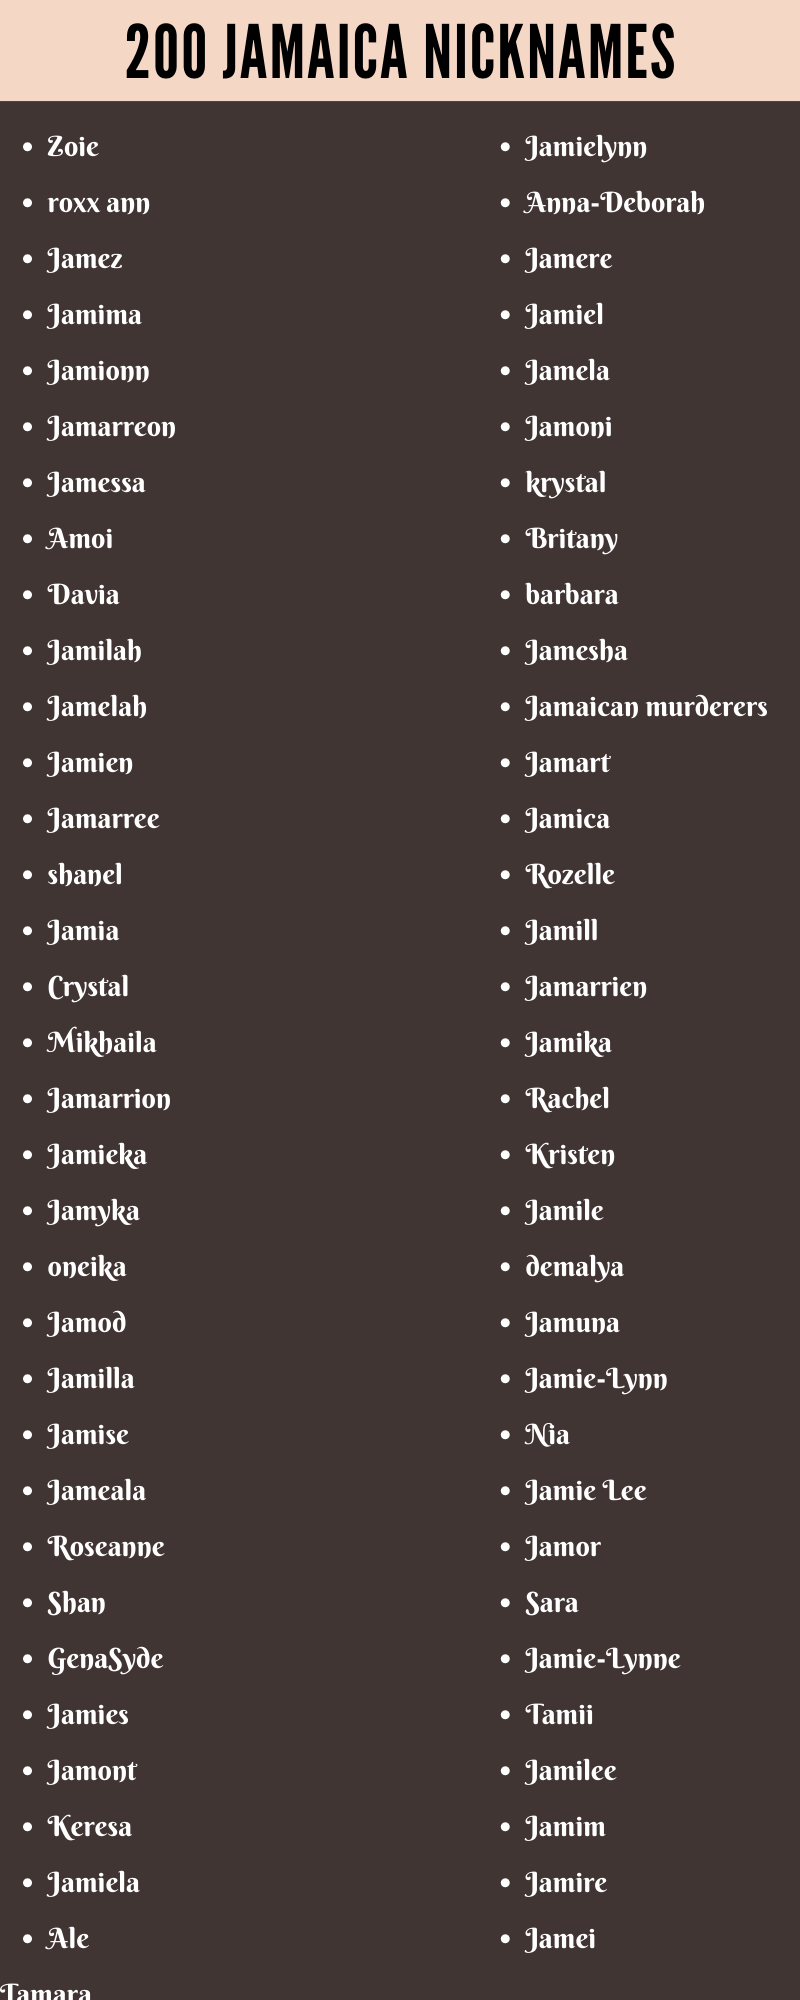  jamaica nicknames